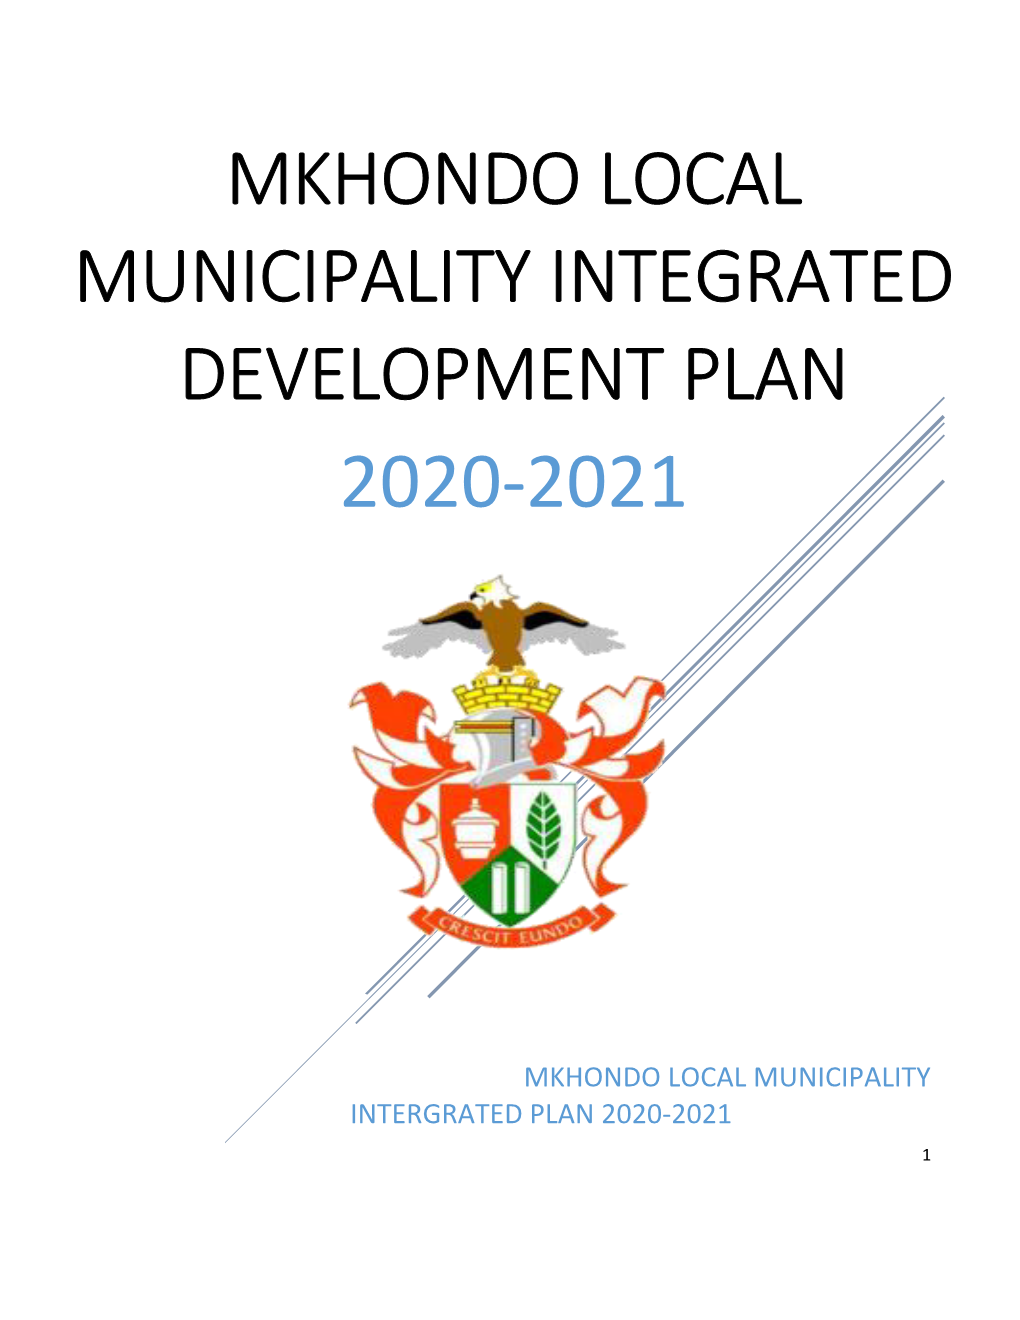 Mkhondo Local Municipality Integrated Development Plan 2020-2021